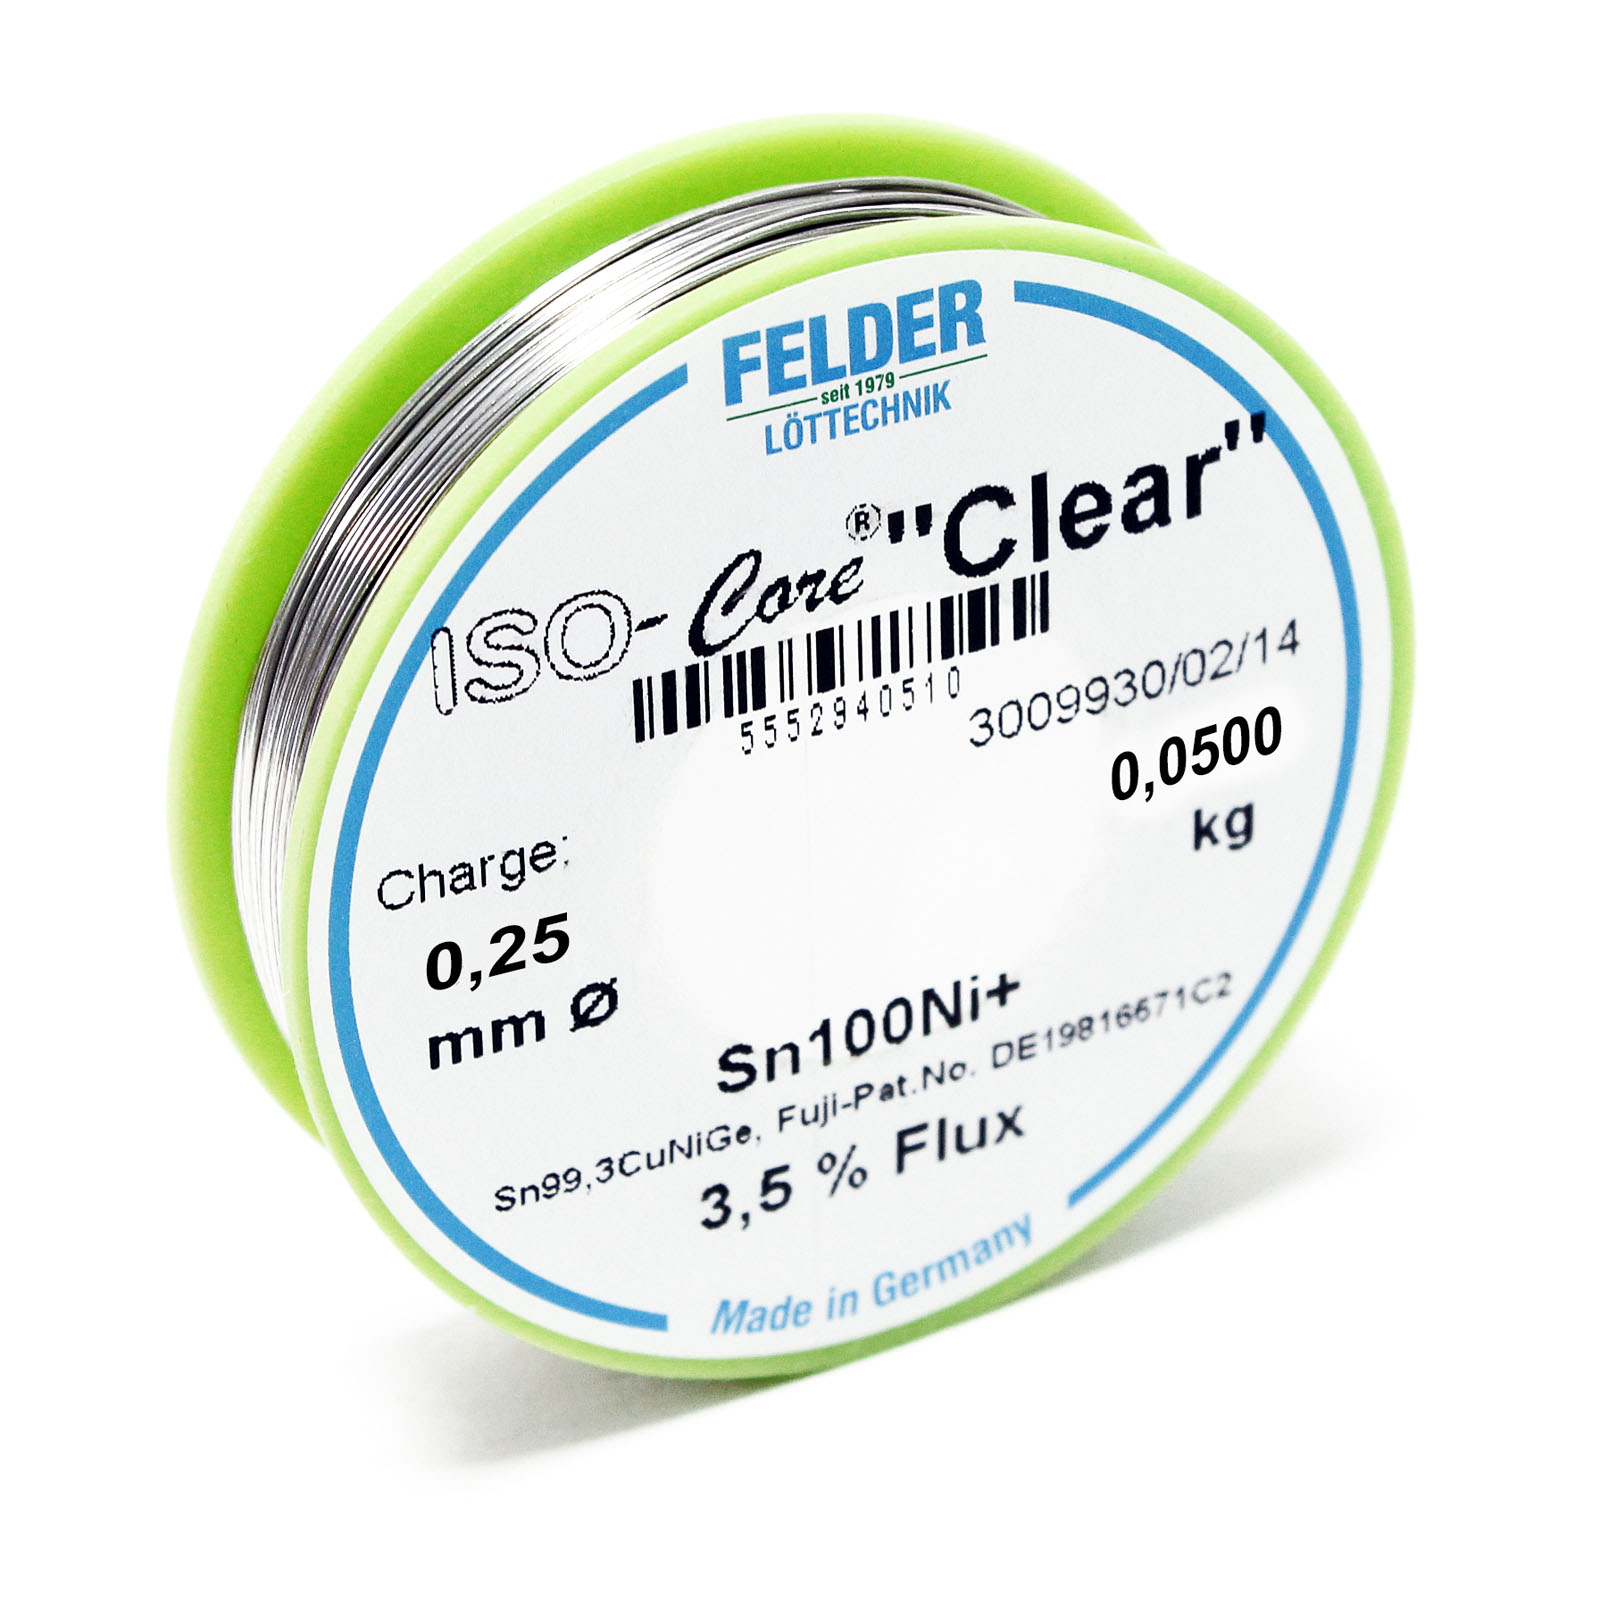 Felder Lötdraht ISO-Core „Clear“ Sn100Ni+ Sn99,3CuNiGe 0.25mm 0.05kg - Profi Lötzinn